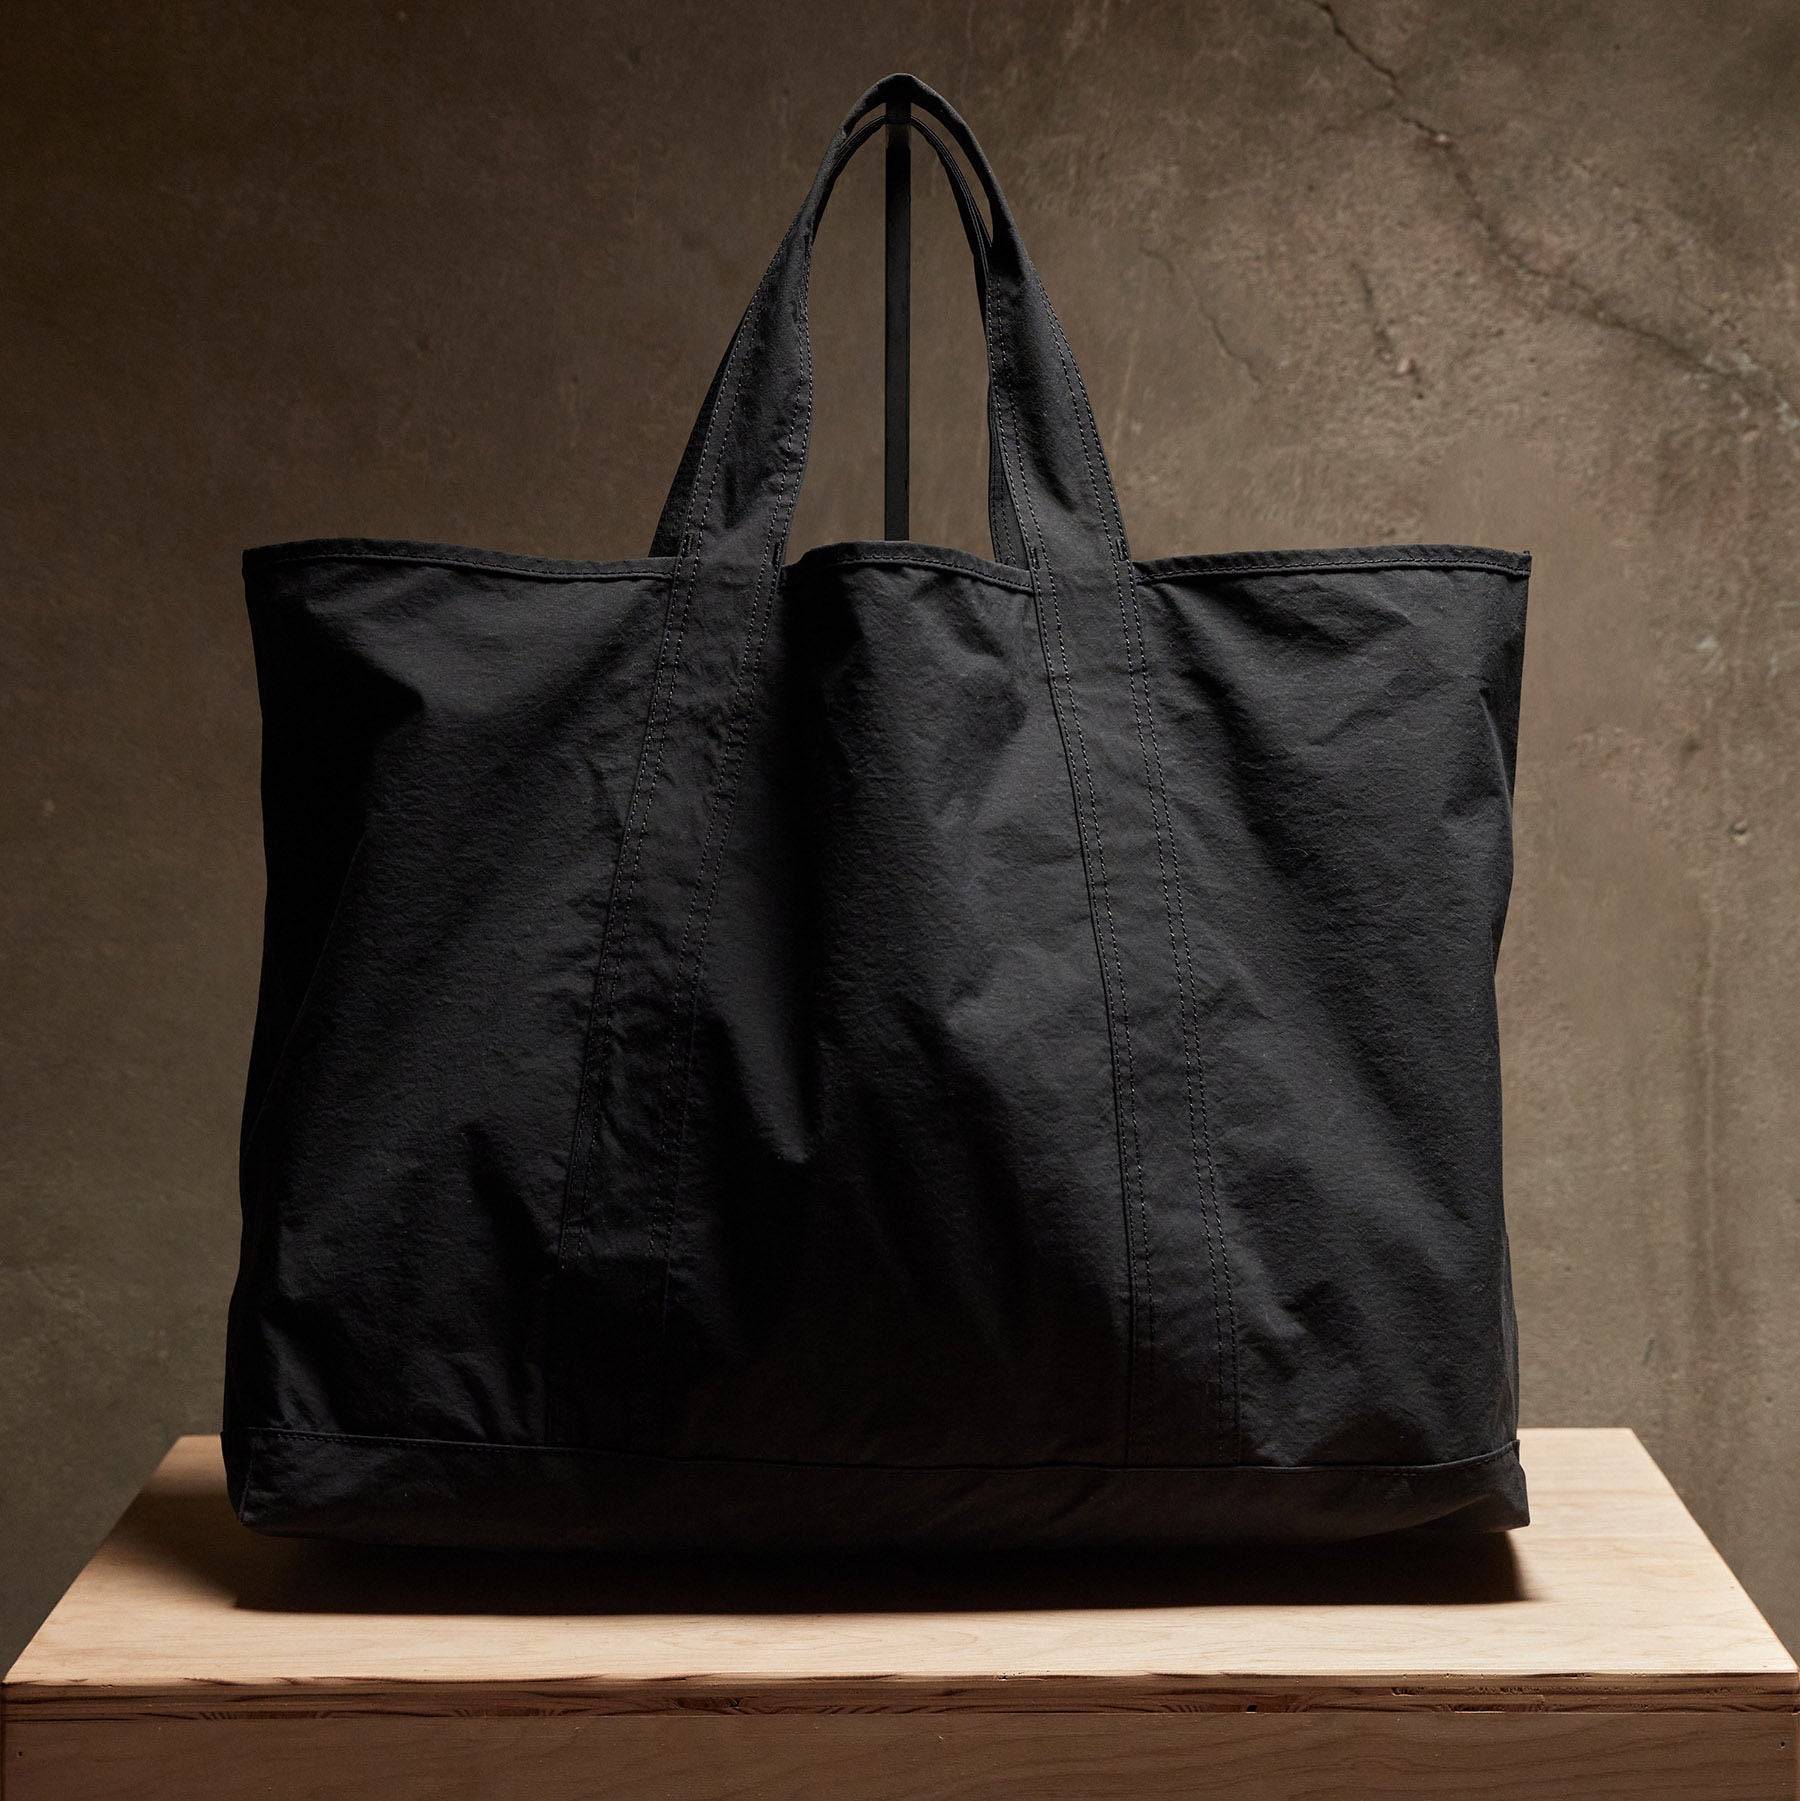 Nylon Large Lightweight Tote Bag Shoulder Bag for Kuwait